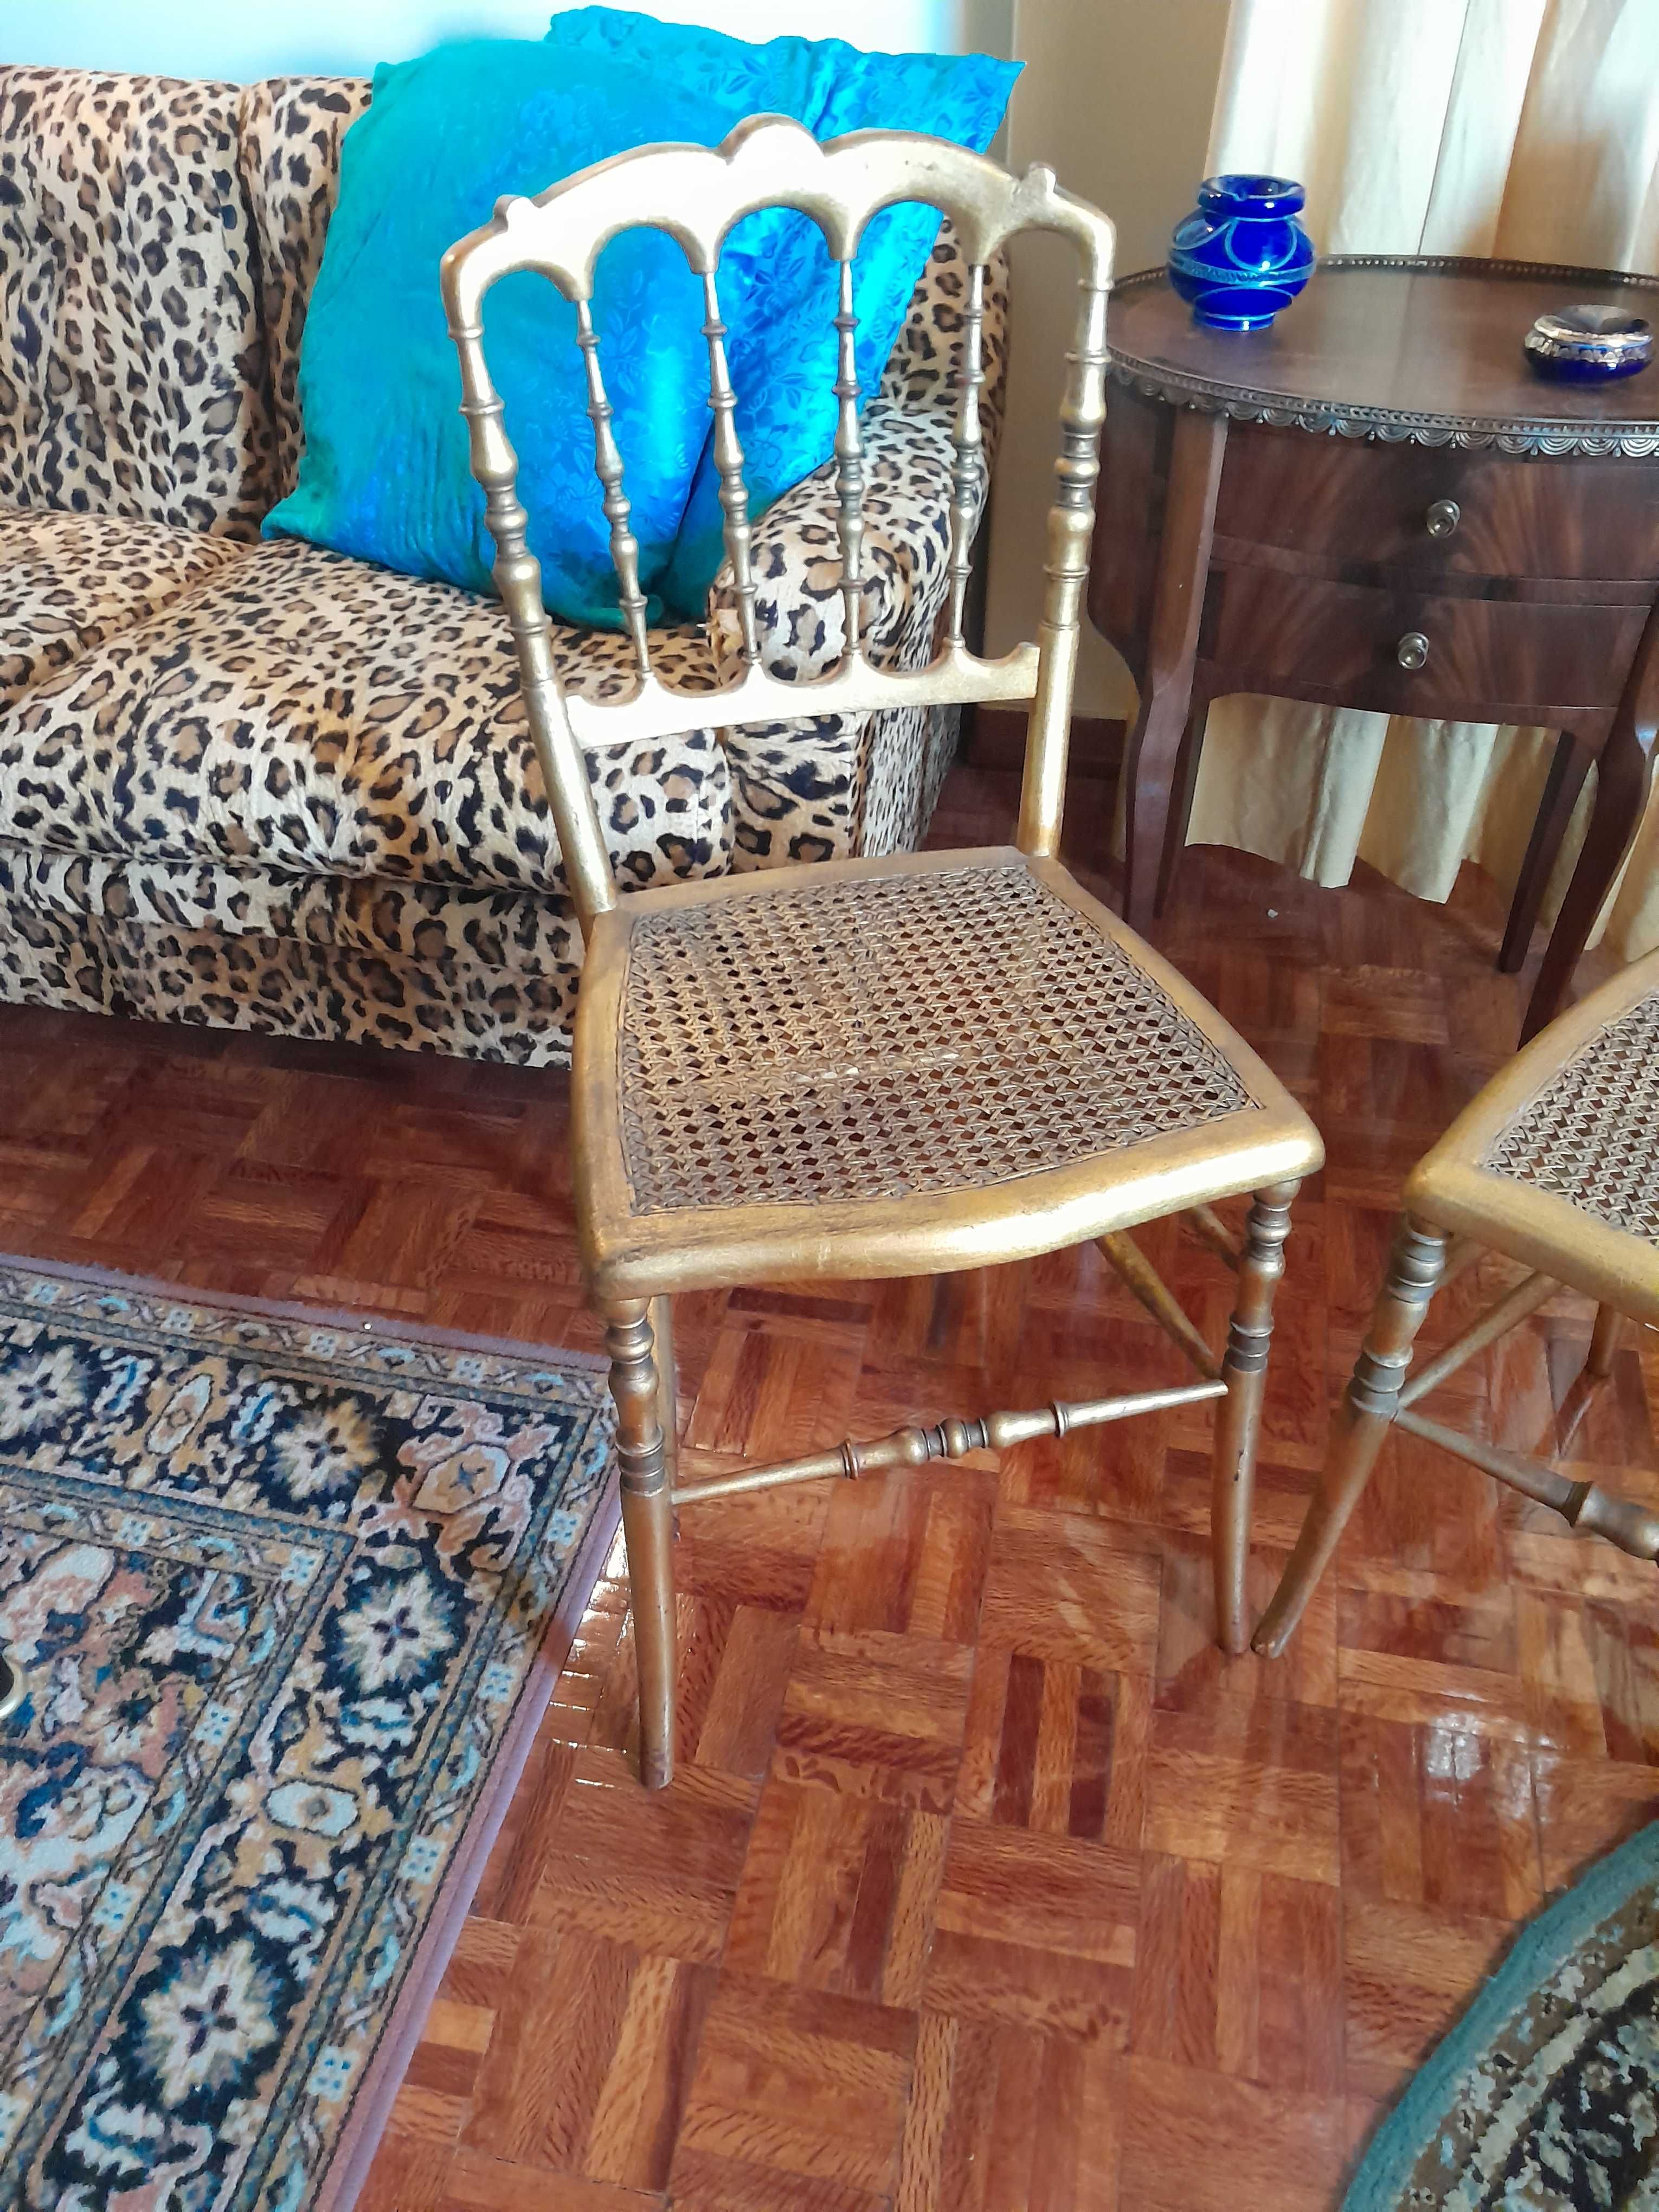 2 cadeiras de palhinha dourada, decorativas. Preço: 50 eur cada.